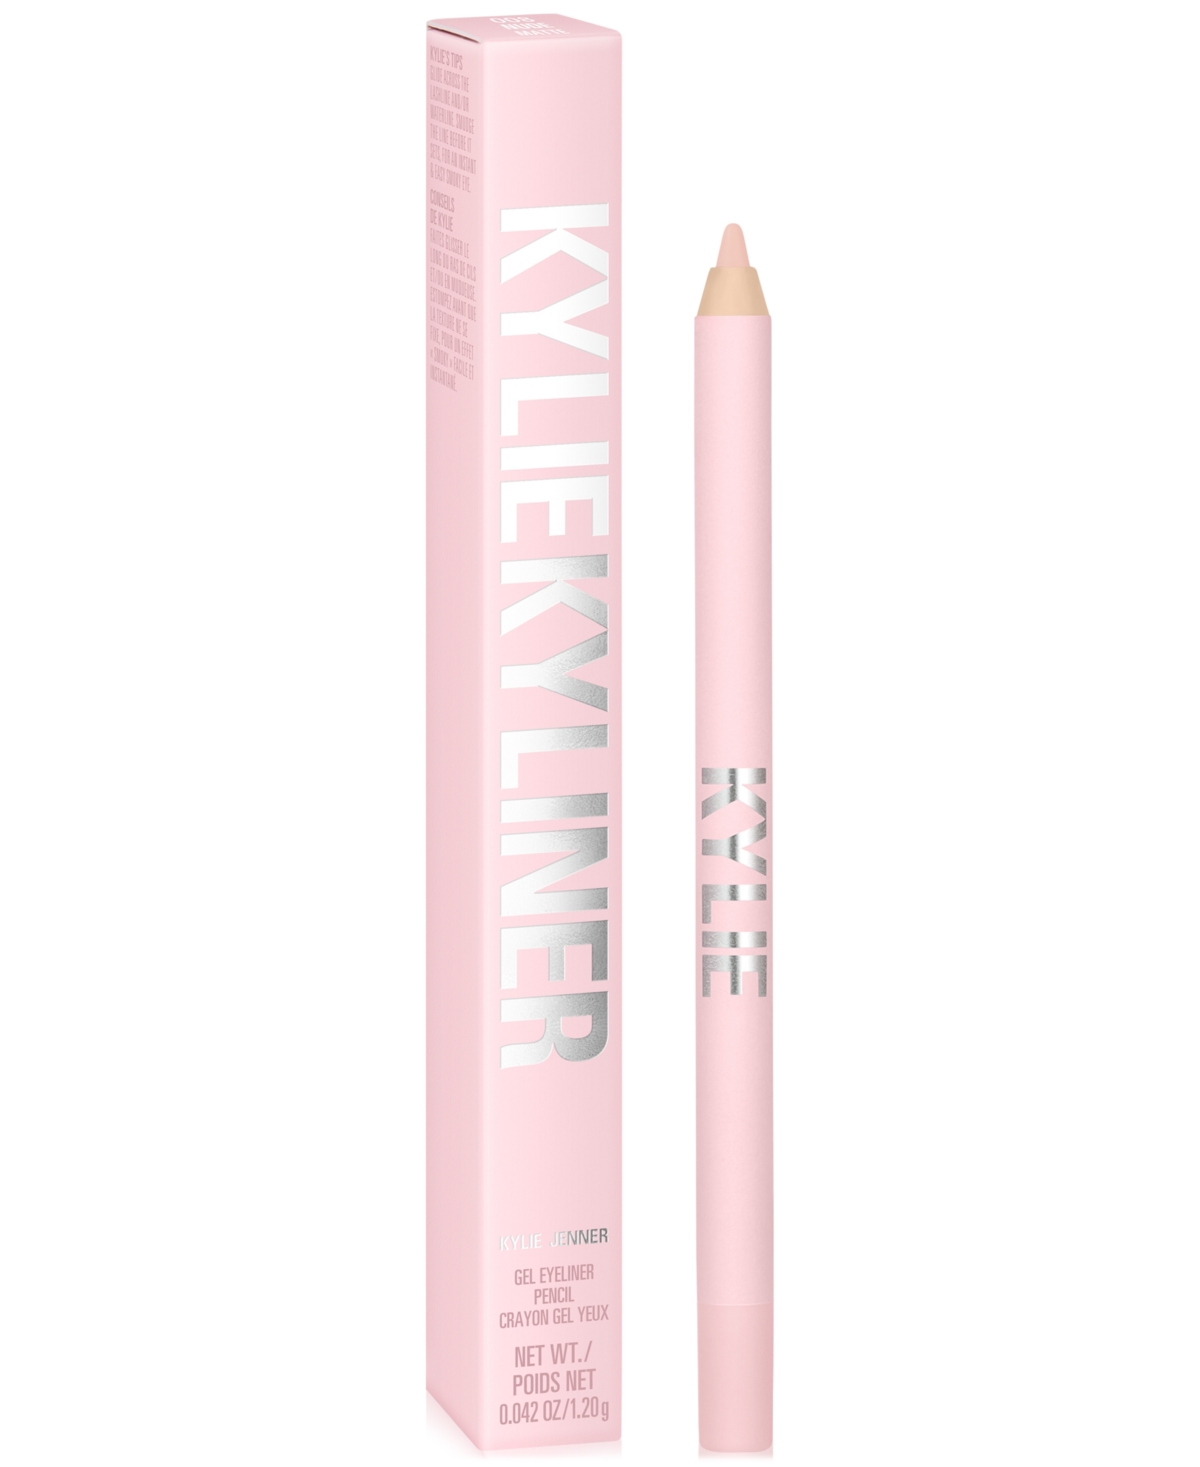 Kylie Cosmetics Kyliner Gel Eyeliner Pencil In Matte Nude